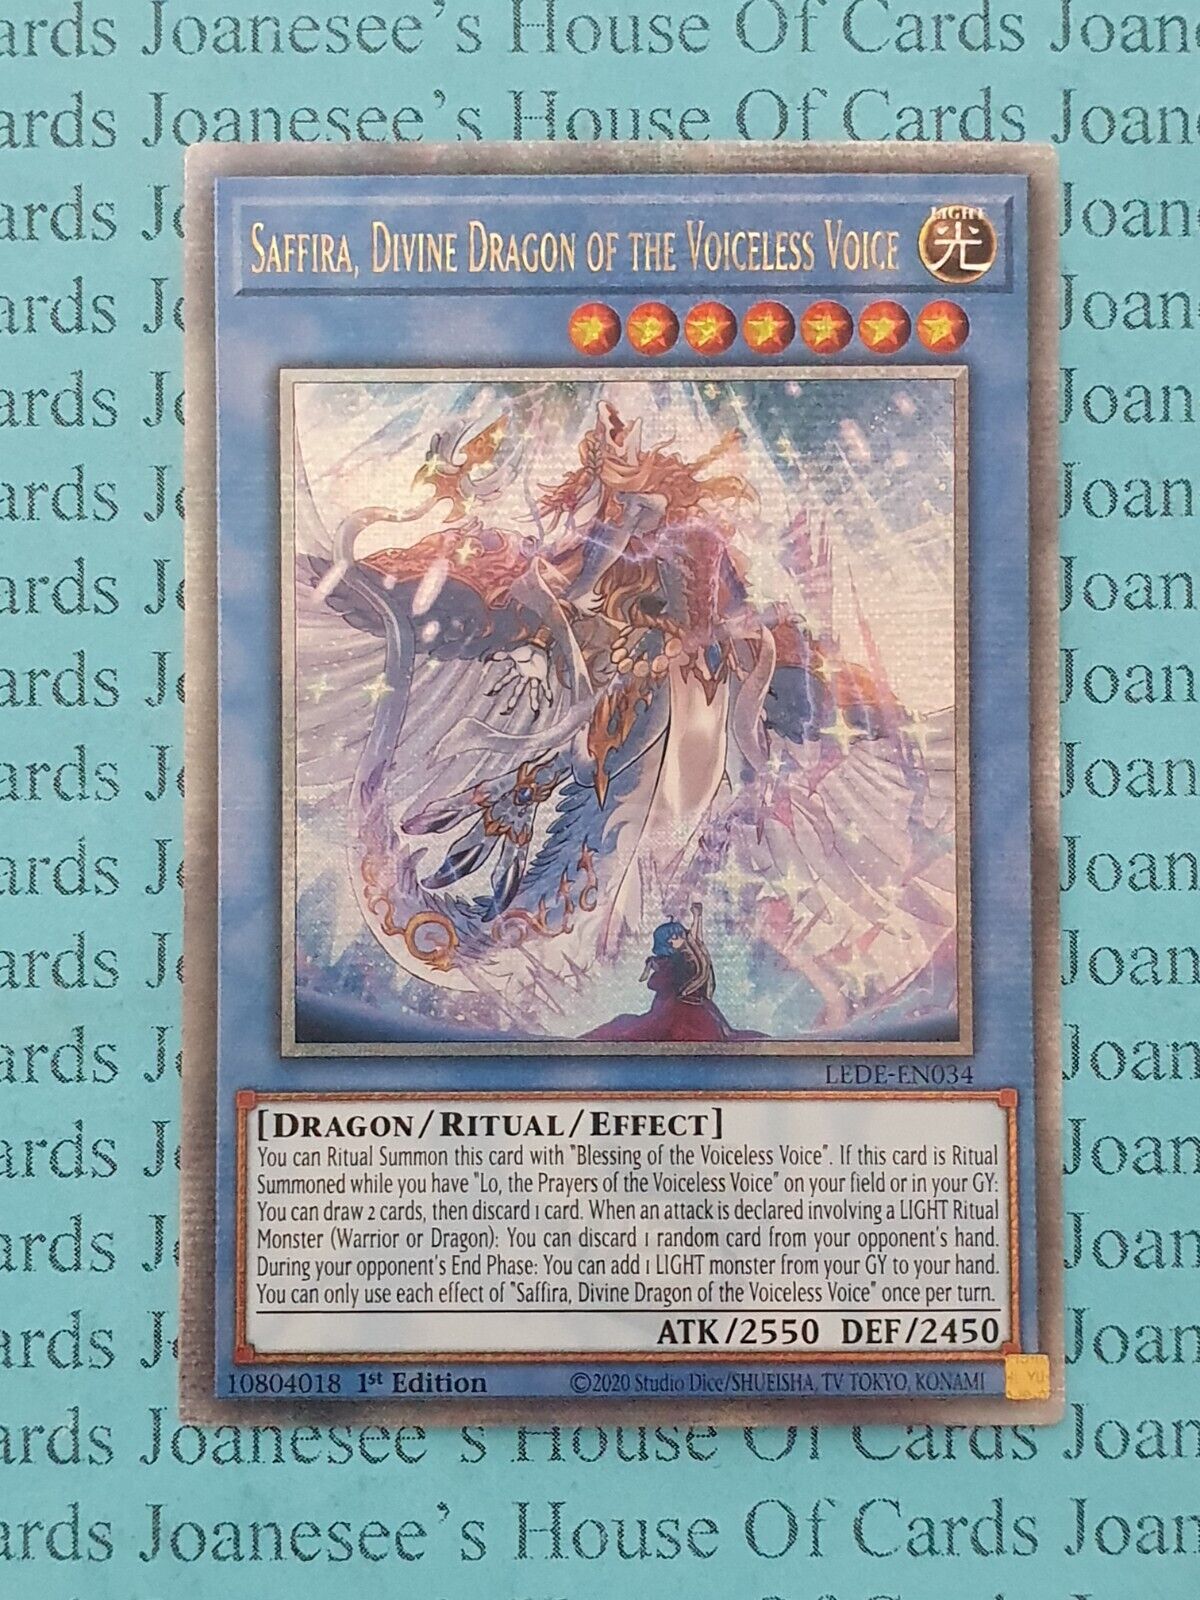 LEDE-EN034 Saffira, Divine Dragon of the Voiceless Voice Quarter Century Rare